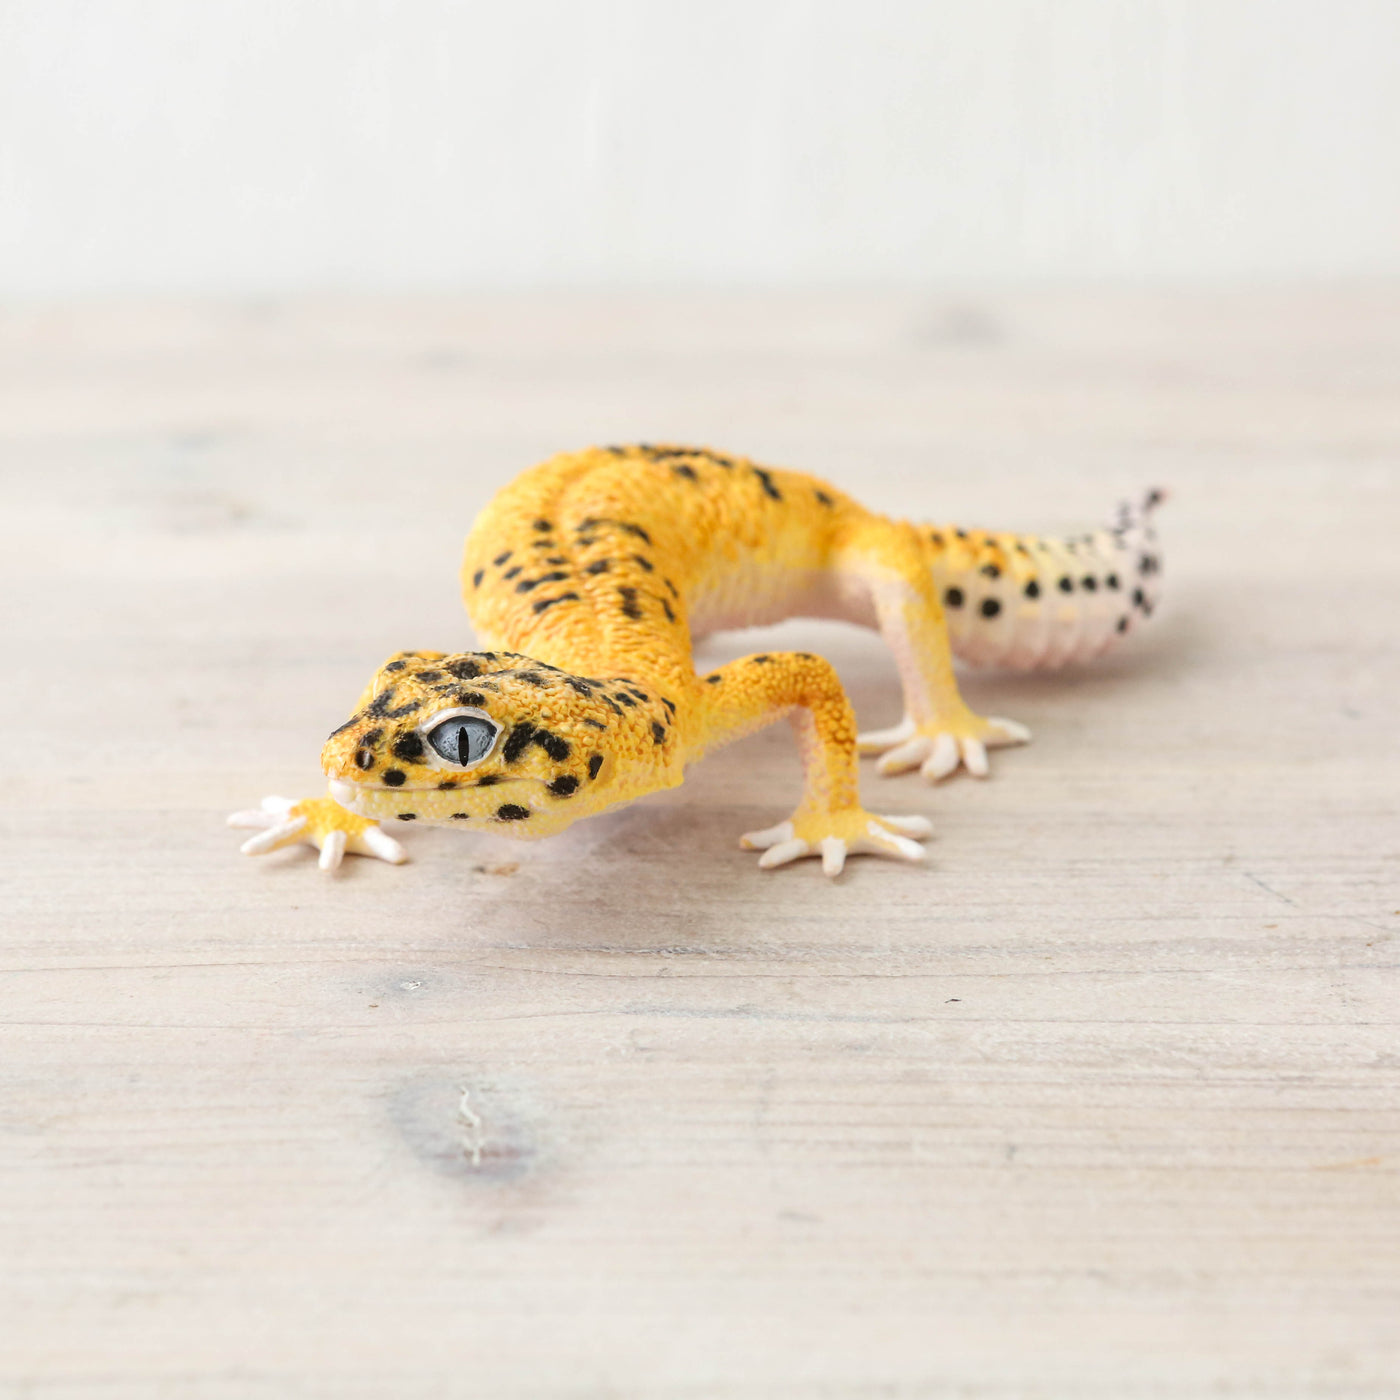 Actual Size Leopard Gecko